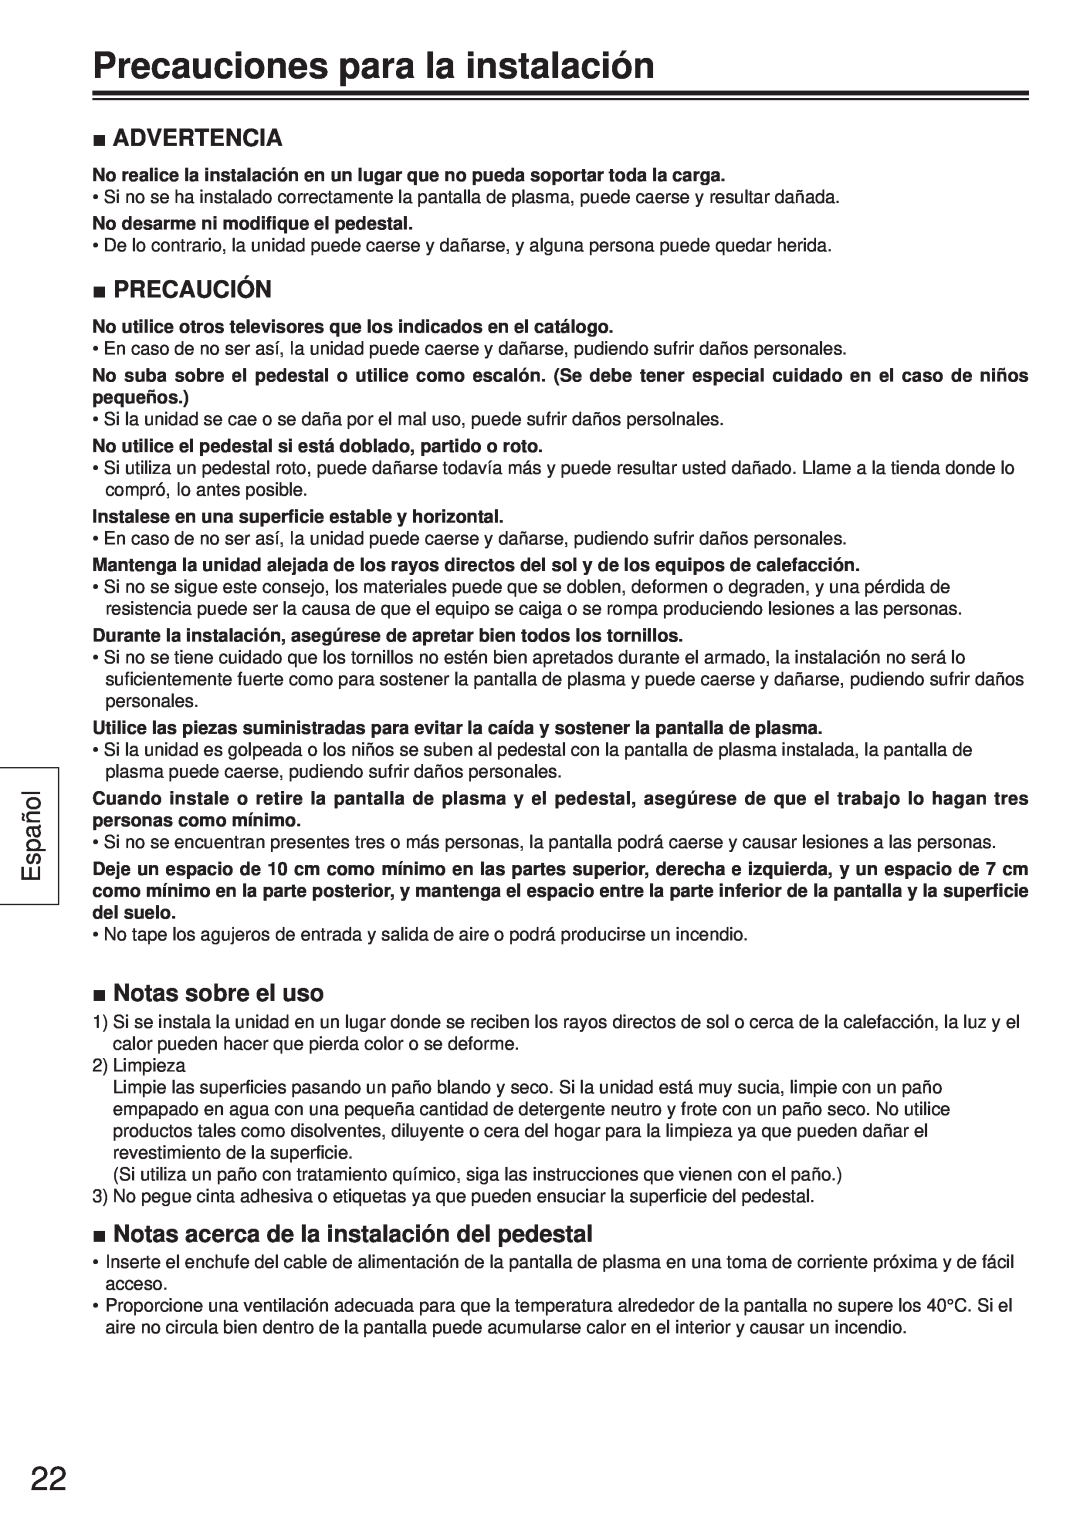 Panasonic TY-ST65VX100 Precauciones para la instalación, Español, Advertencia, Precaución, Notas sobre el uso 